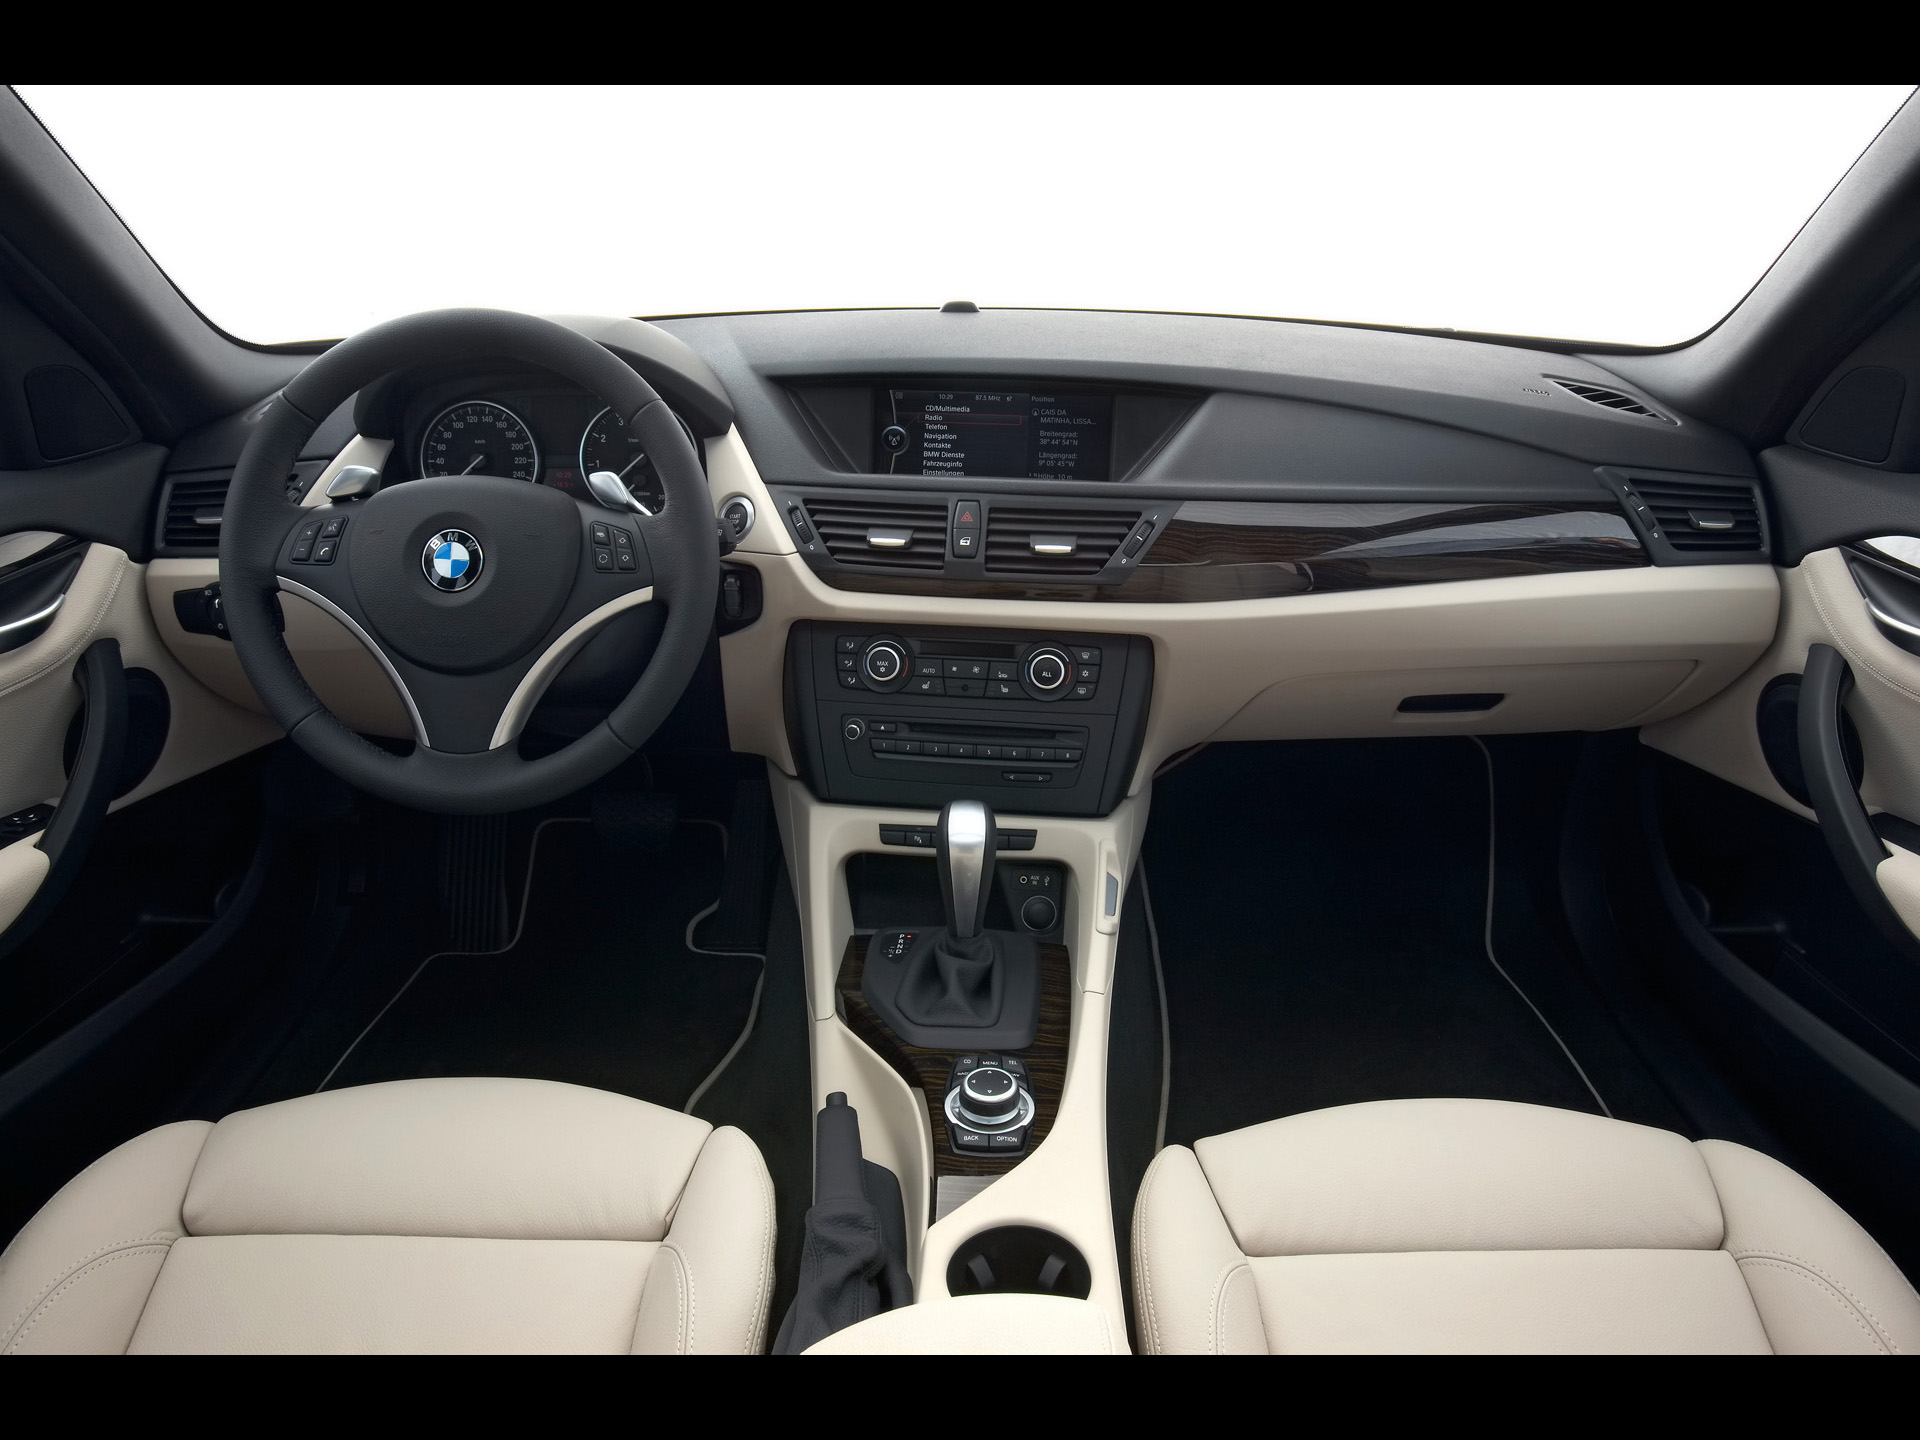 2010 BMW X1 â€“ Dashboard